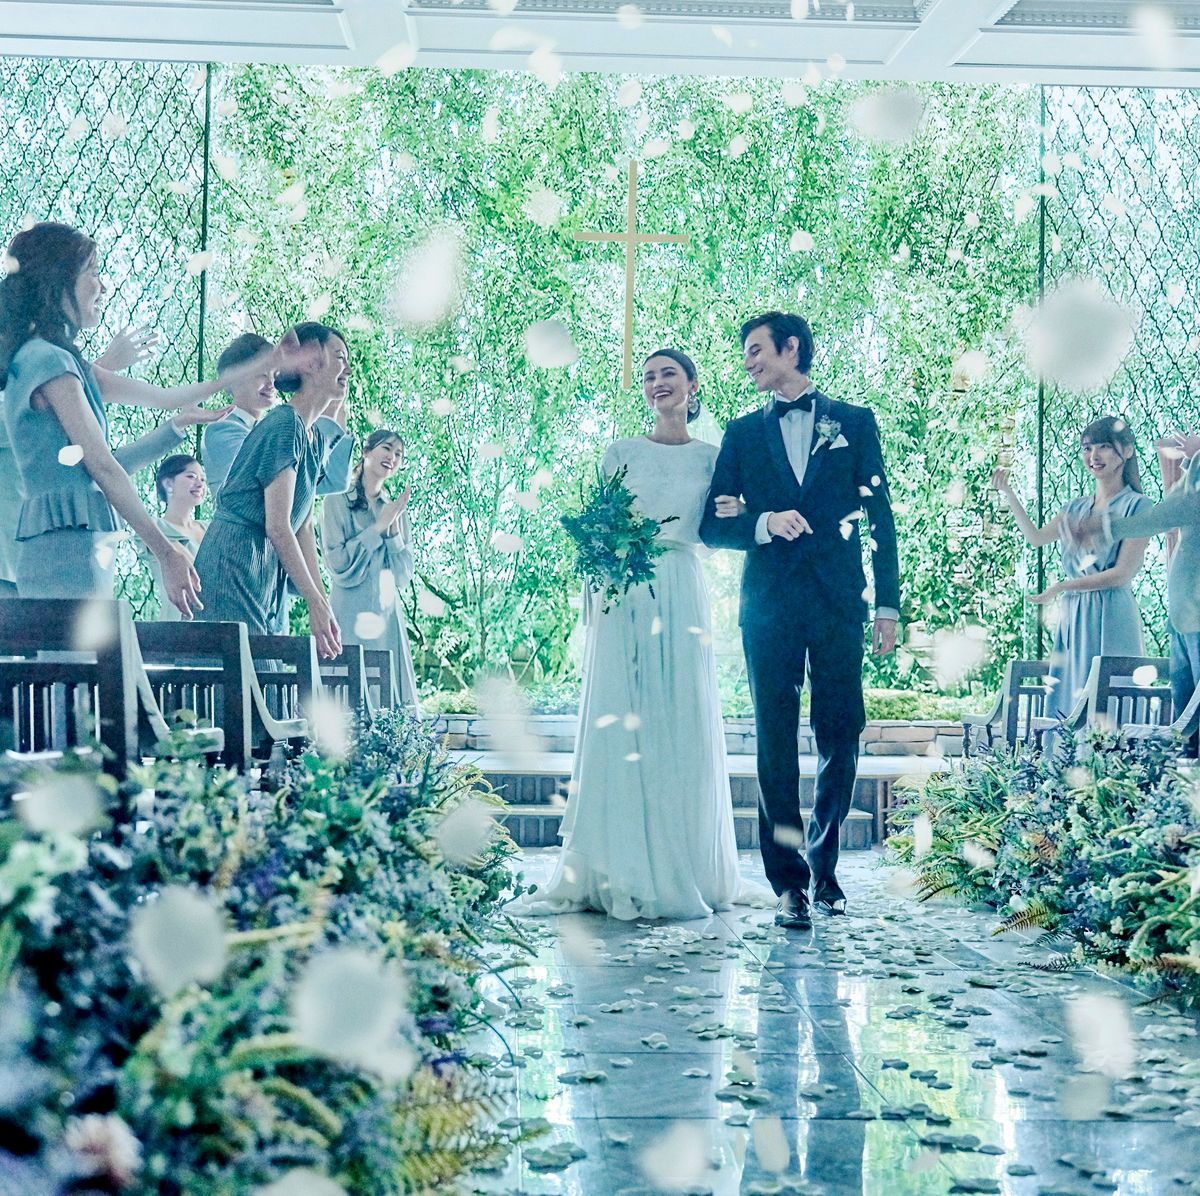 インスタイルウェディング京都(InStyle wedding KYOTO)の公式写真1枚目